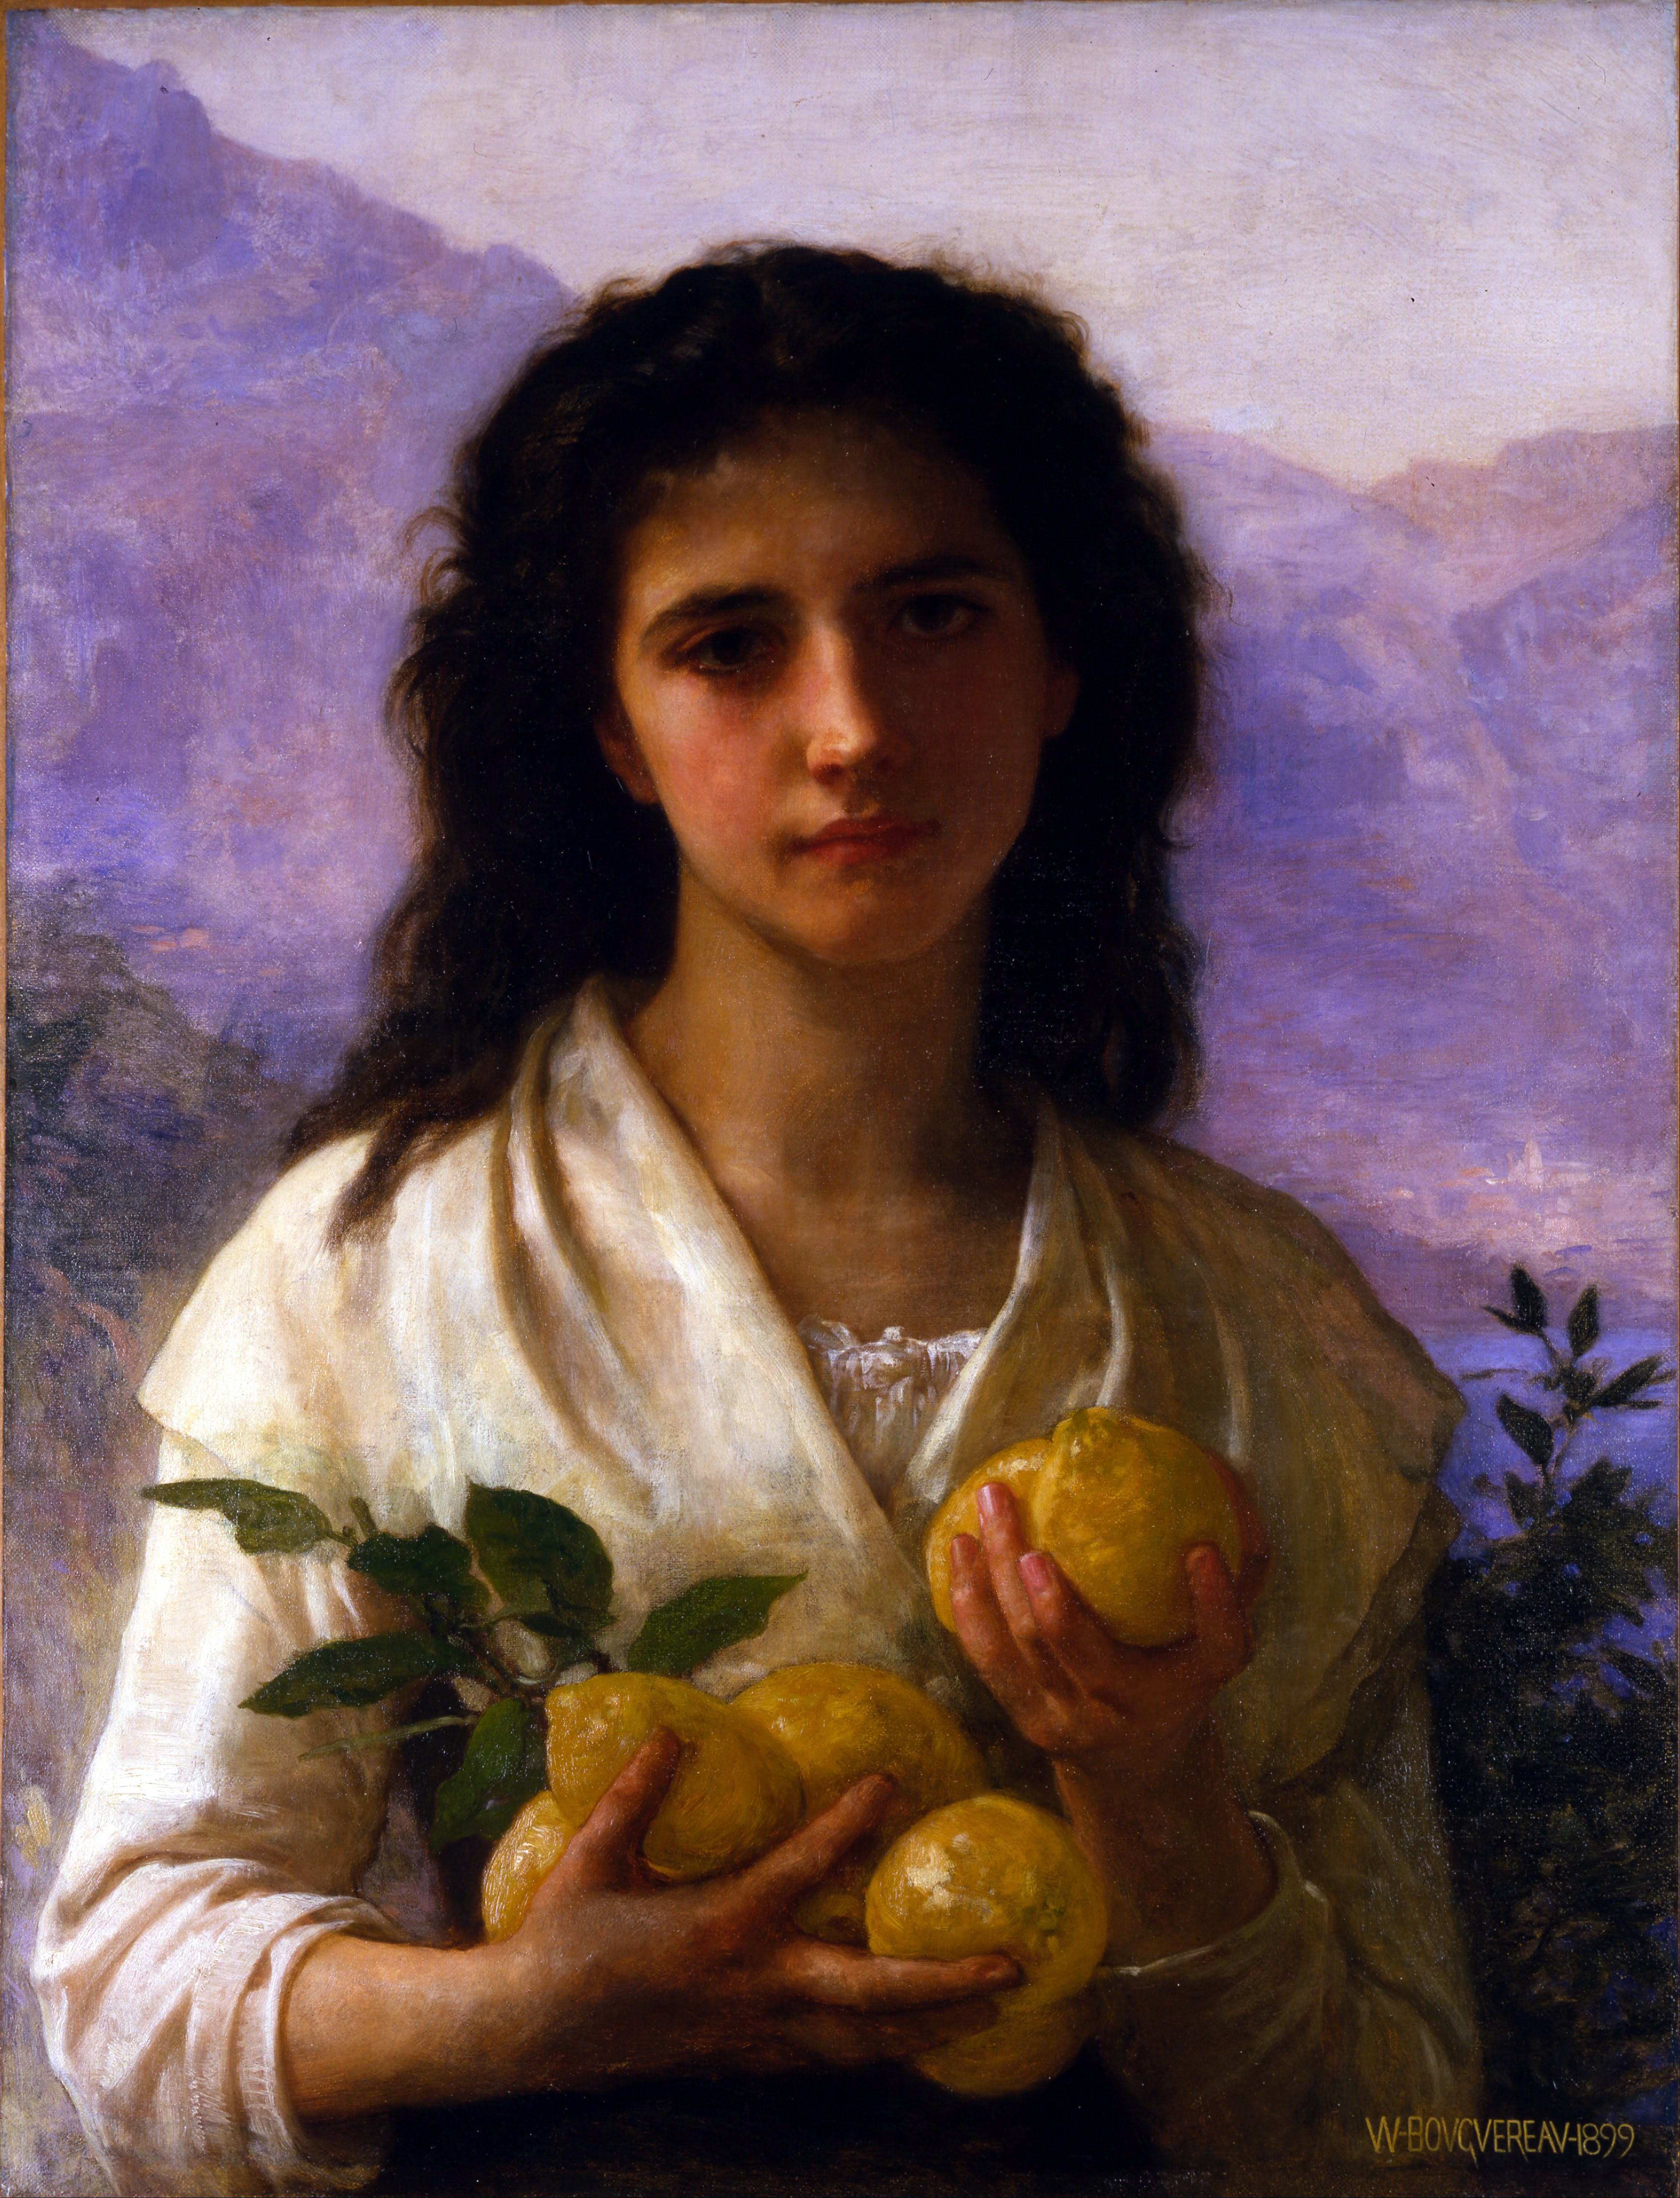 William-Adolphe Bouguereau (1825-1905) - Girl Holding Lemons (1899).